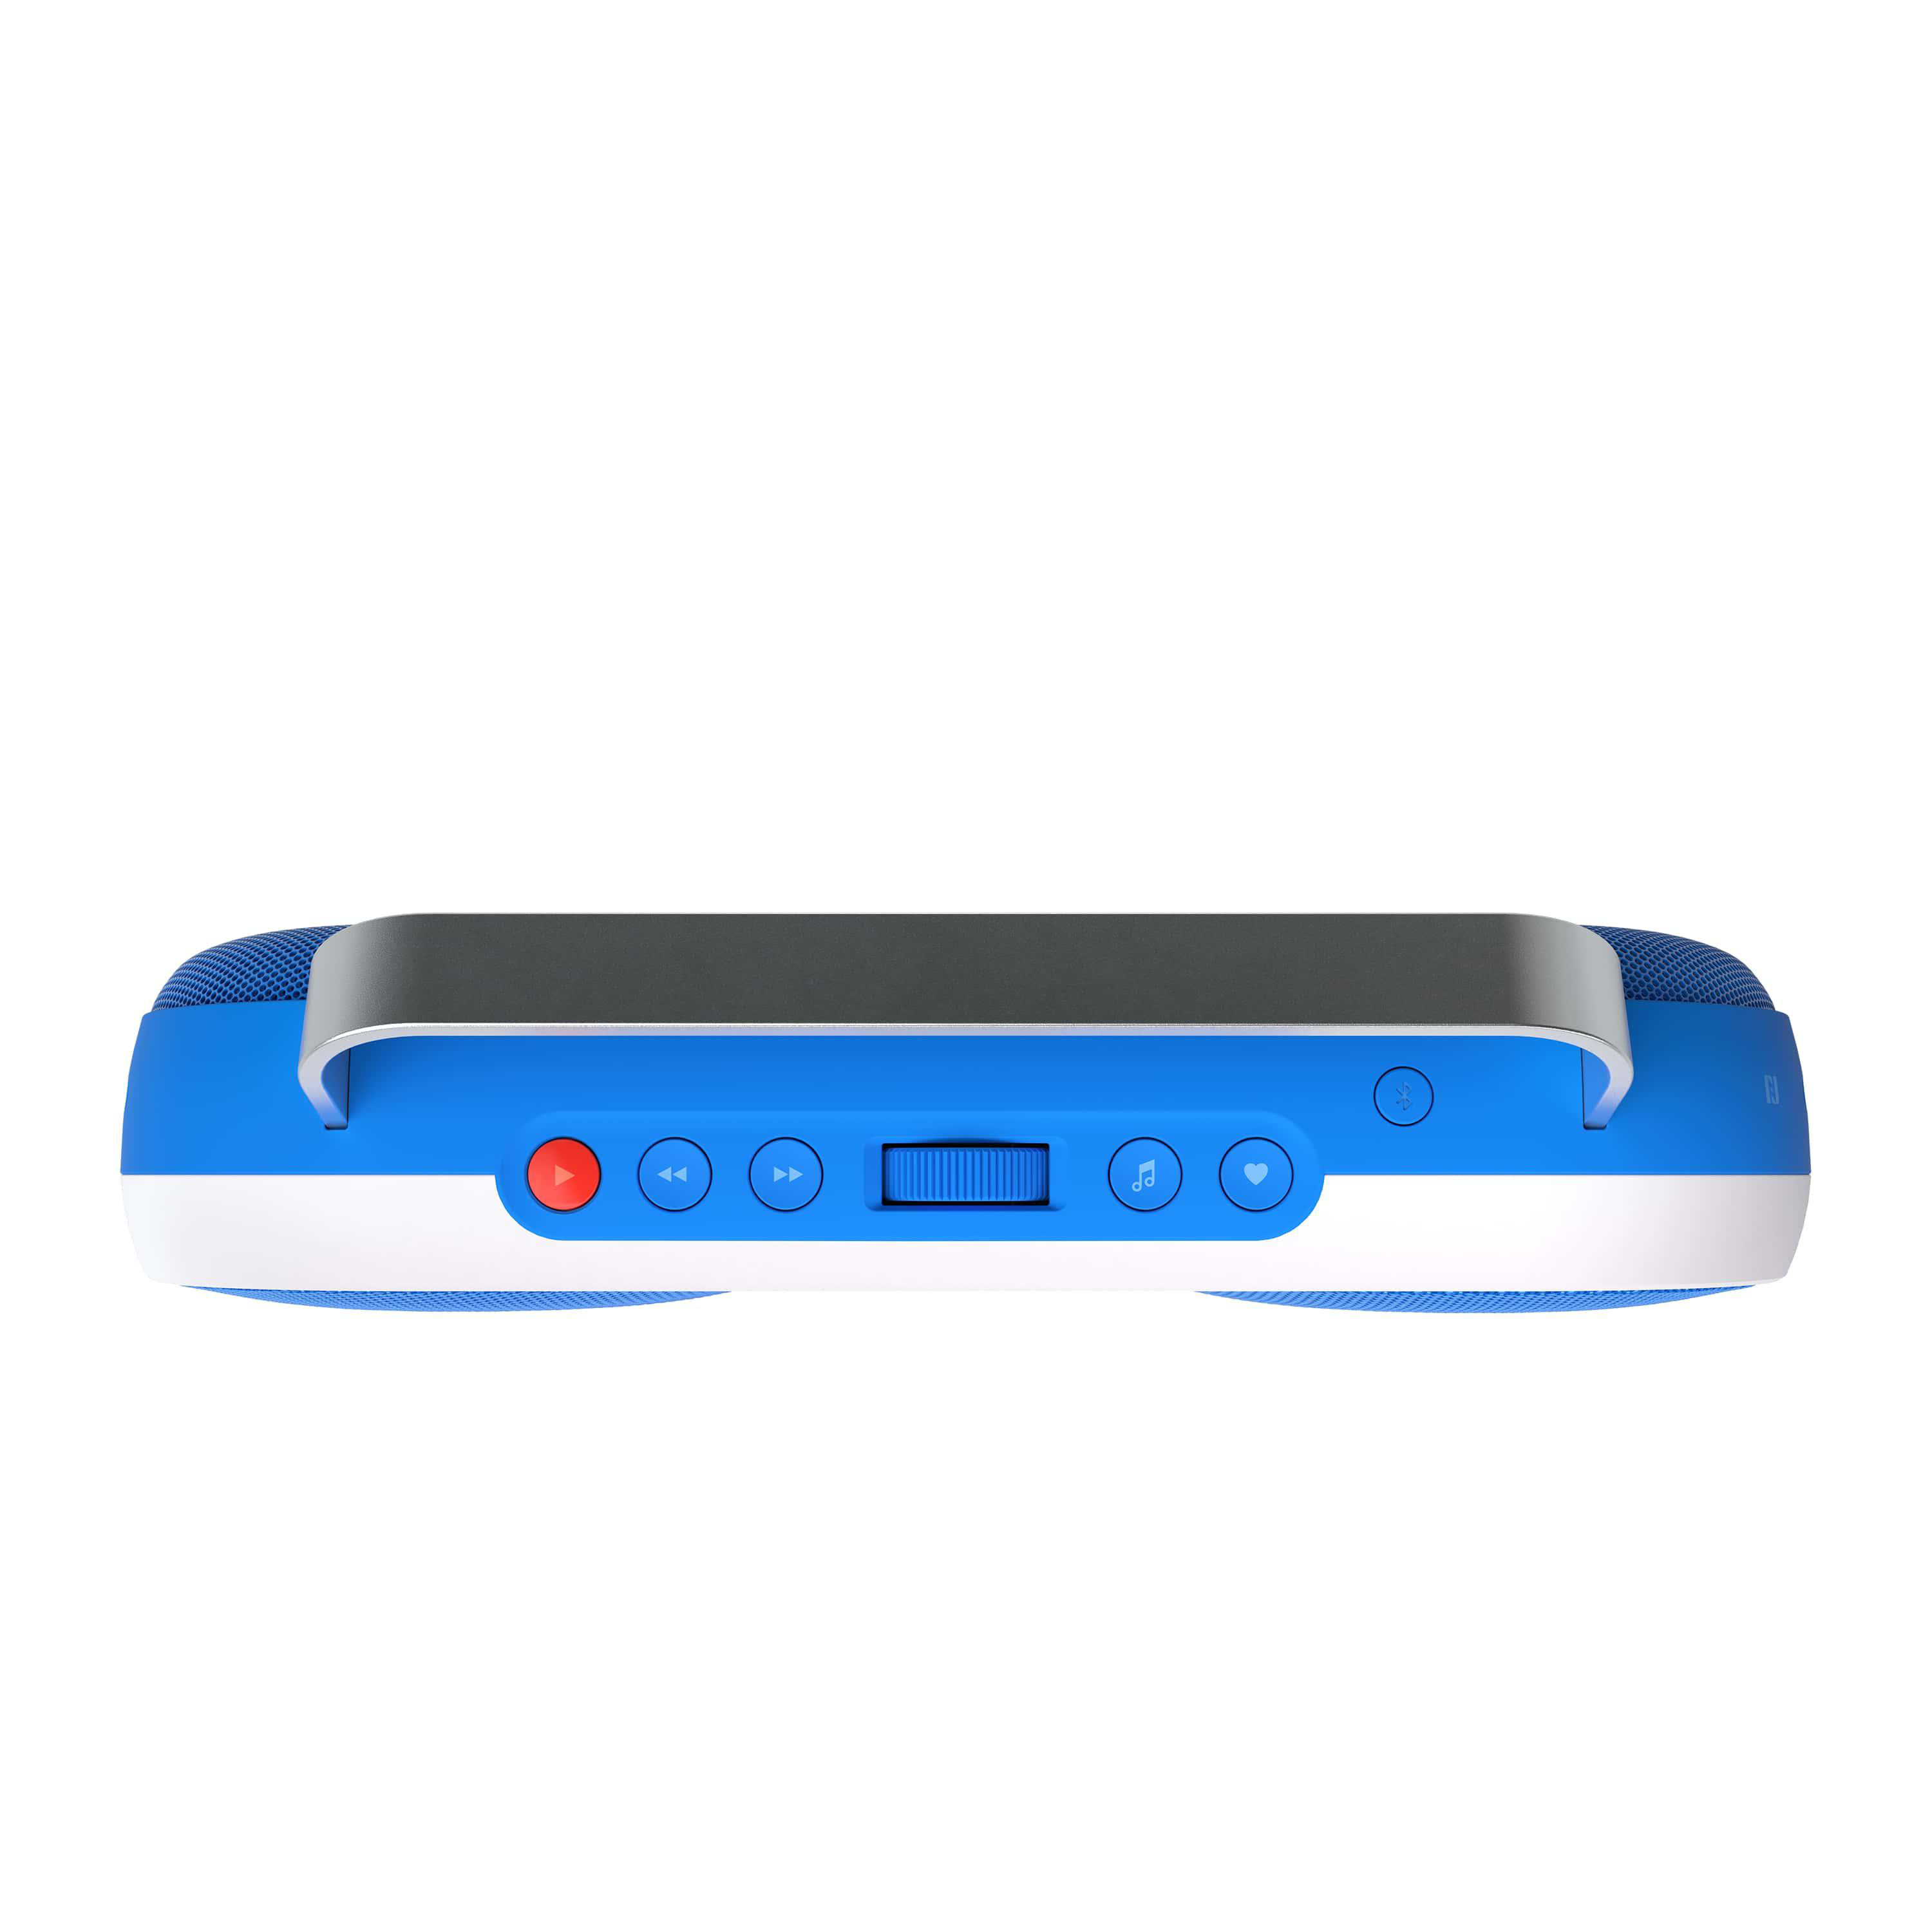 POLAROID Music , Bluetooth P3 Blau/Weiß Player Lautsprecher